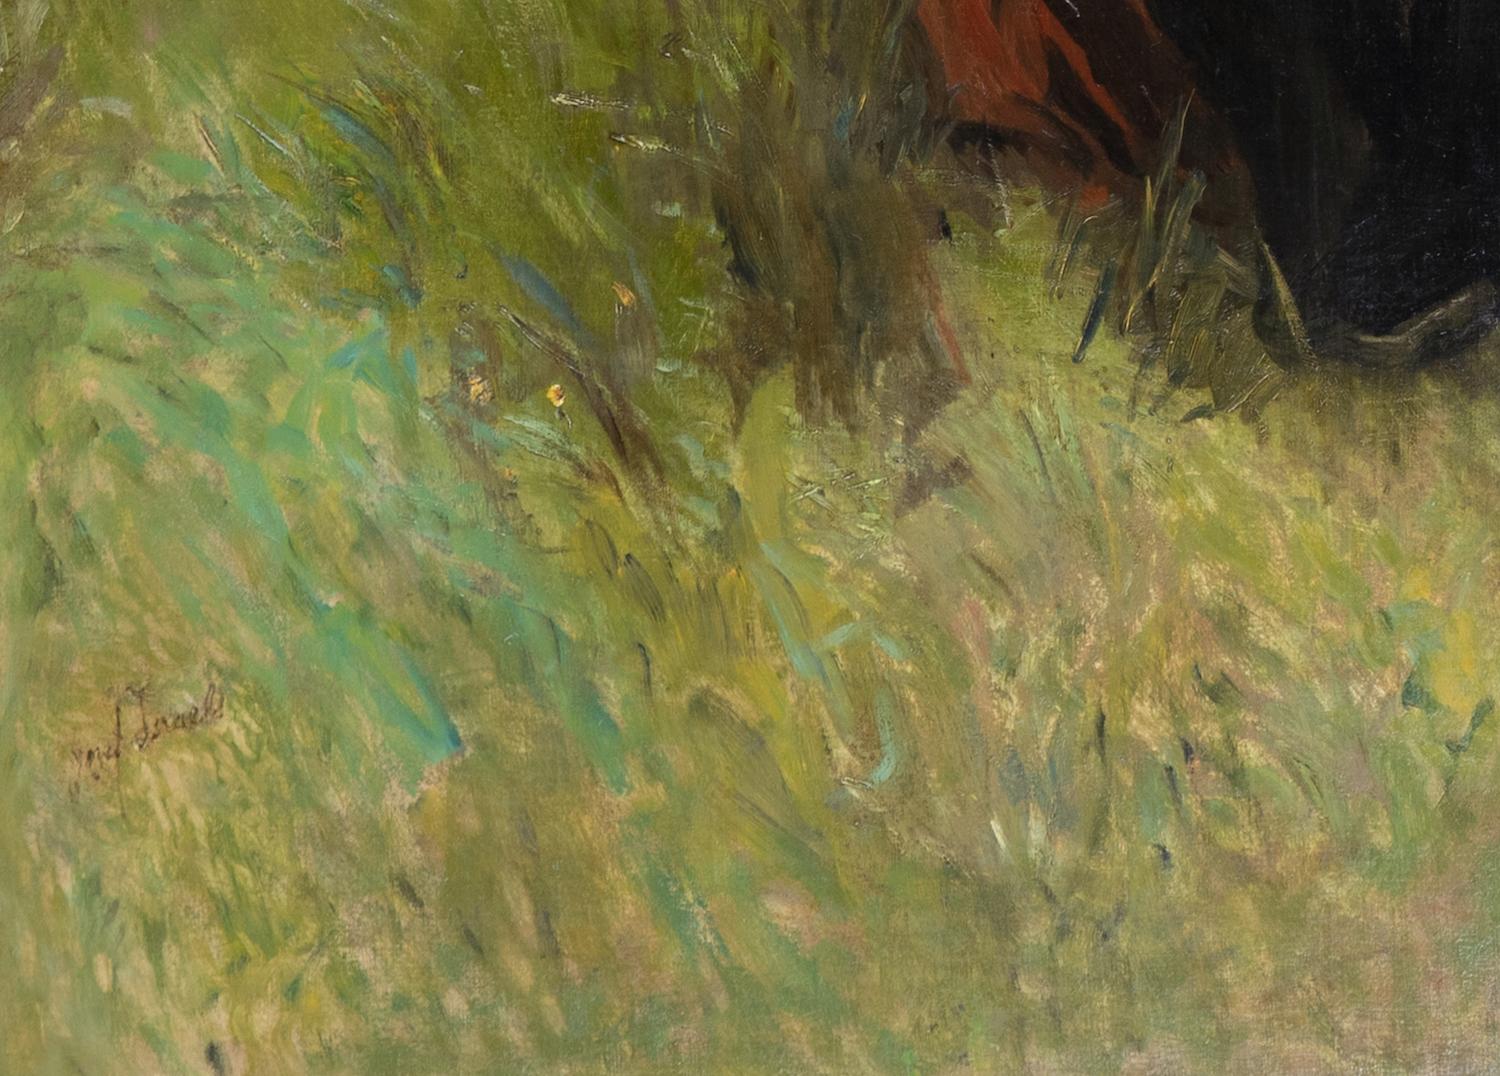 Warten von Jozef Israëls (1824-1911)
Öl auf Leinwand
95.3 x 133,9 cm (37 ½ x 52 ¾ Zoll)
Signiert unten links, Jozef Israels

Ein monumentales Gemälde von einem der bedeutendsten niederländischen Künstler des 19. Jahrhunderts, das eines seiner